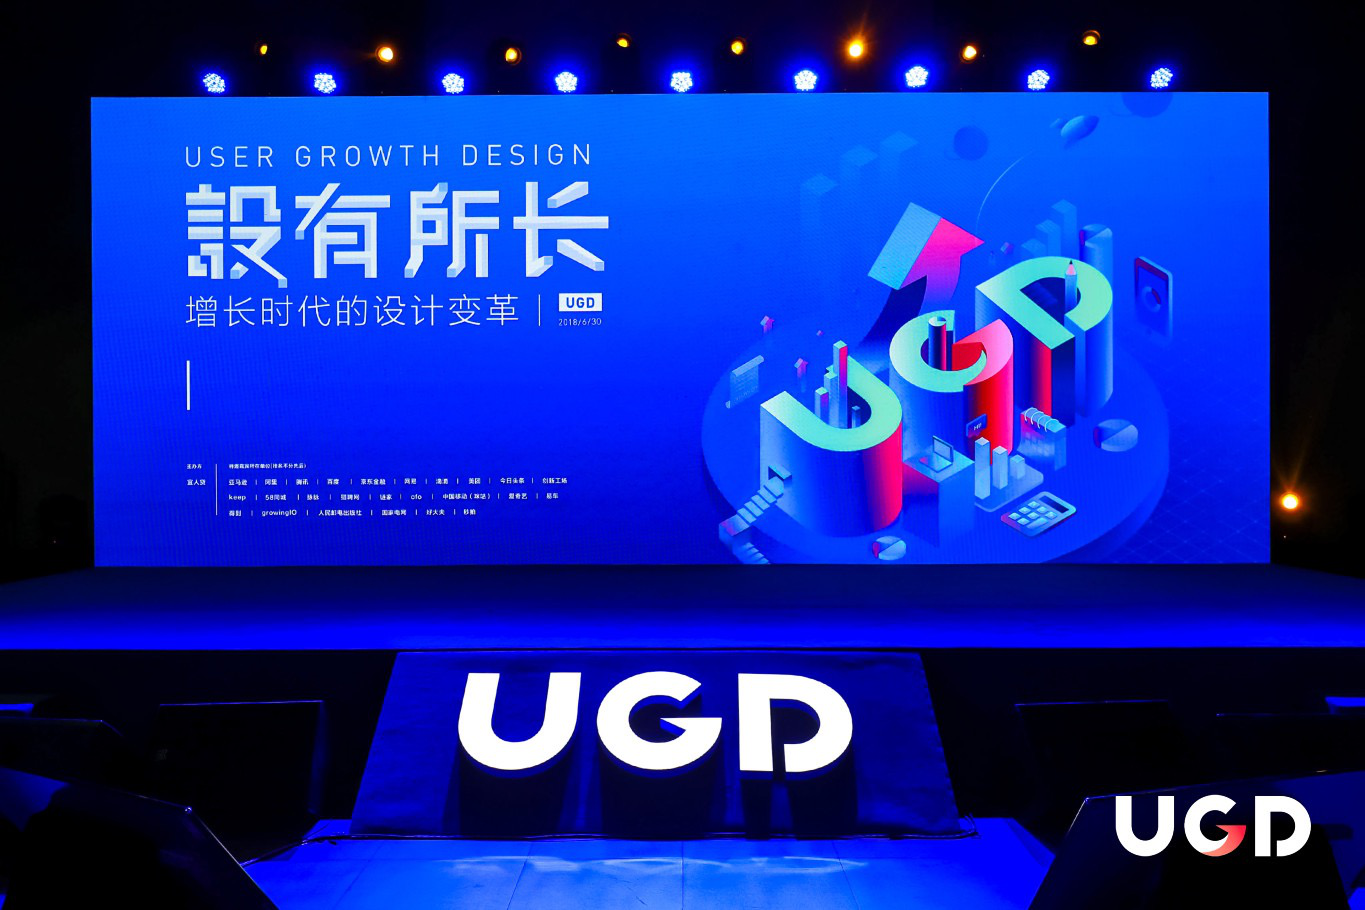 首届UGD设计大会在京举办，宜人贷提出“设计驱动增长”